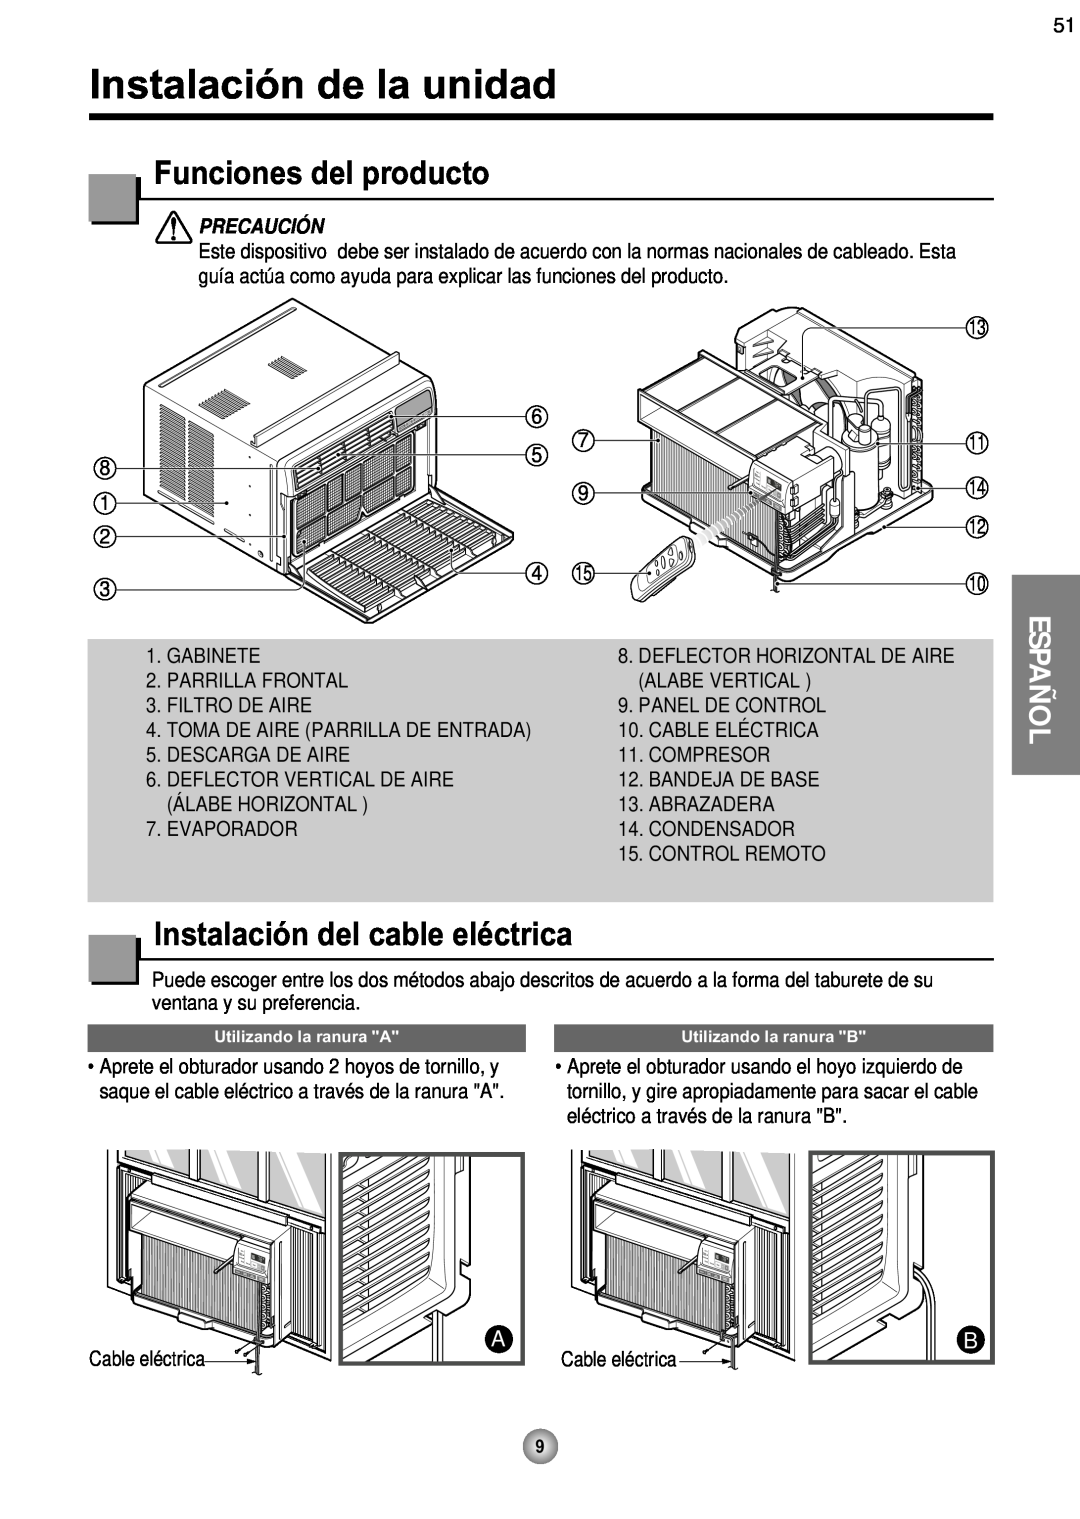 Friedrich ZQ08 Instalación de la unidad, Funciones del producto, Instalación del cable eléctrica, Español, Precaución 